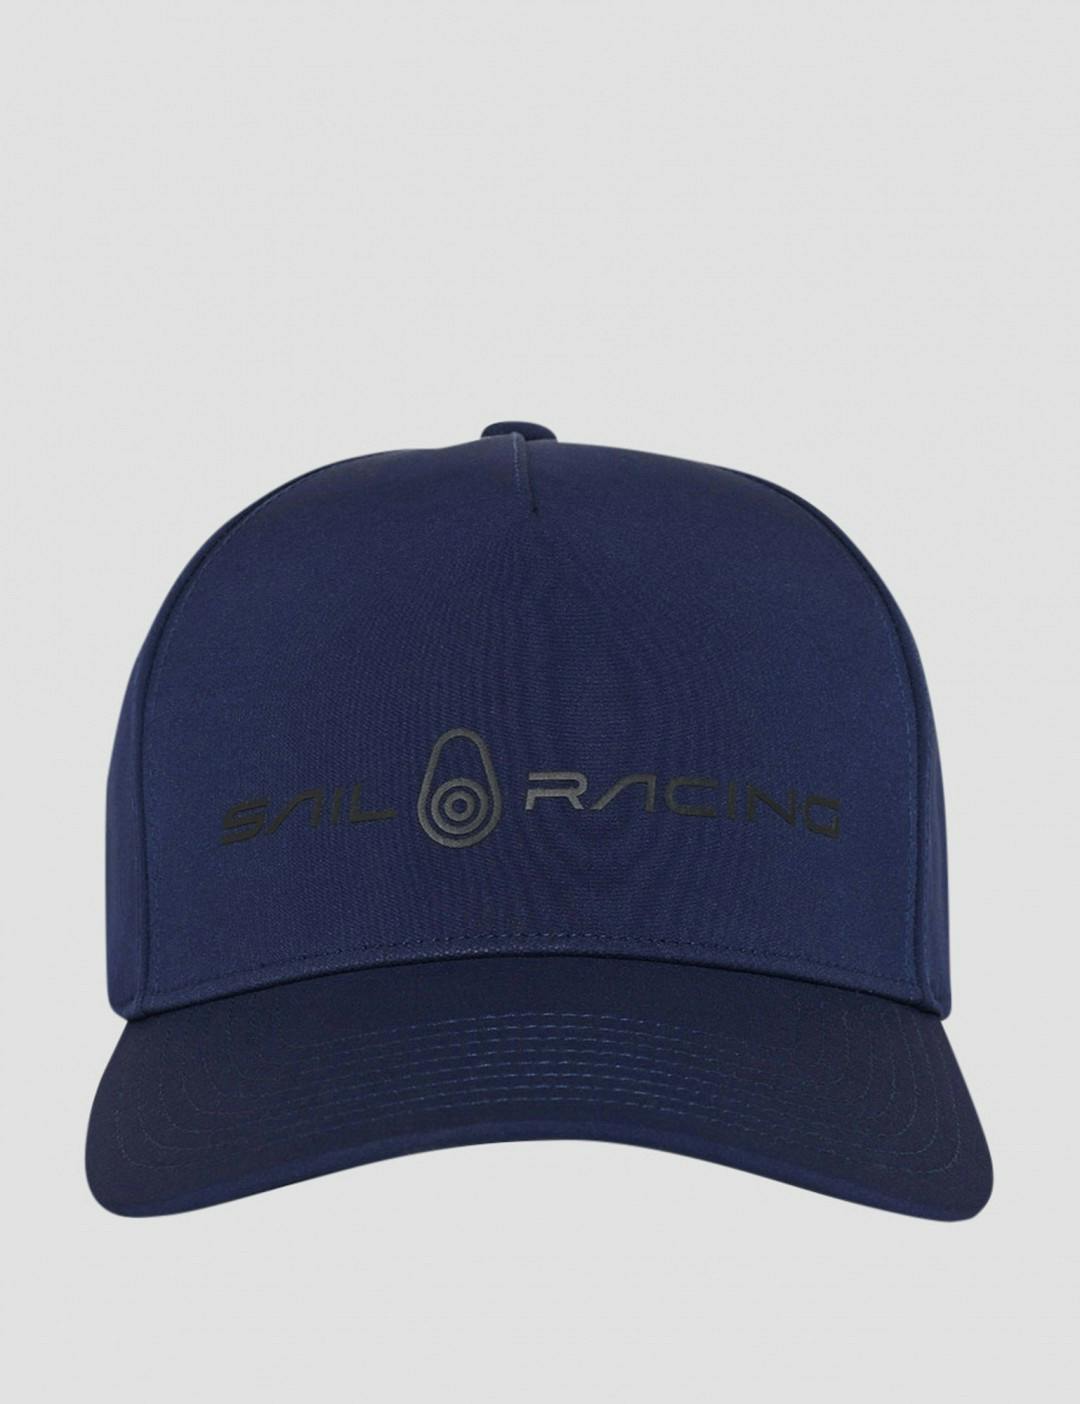 JR SPRAY CAP